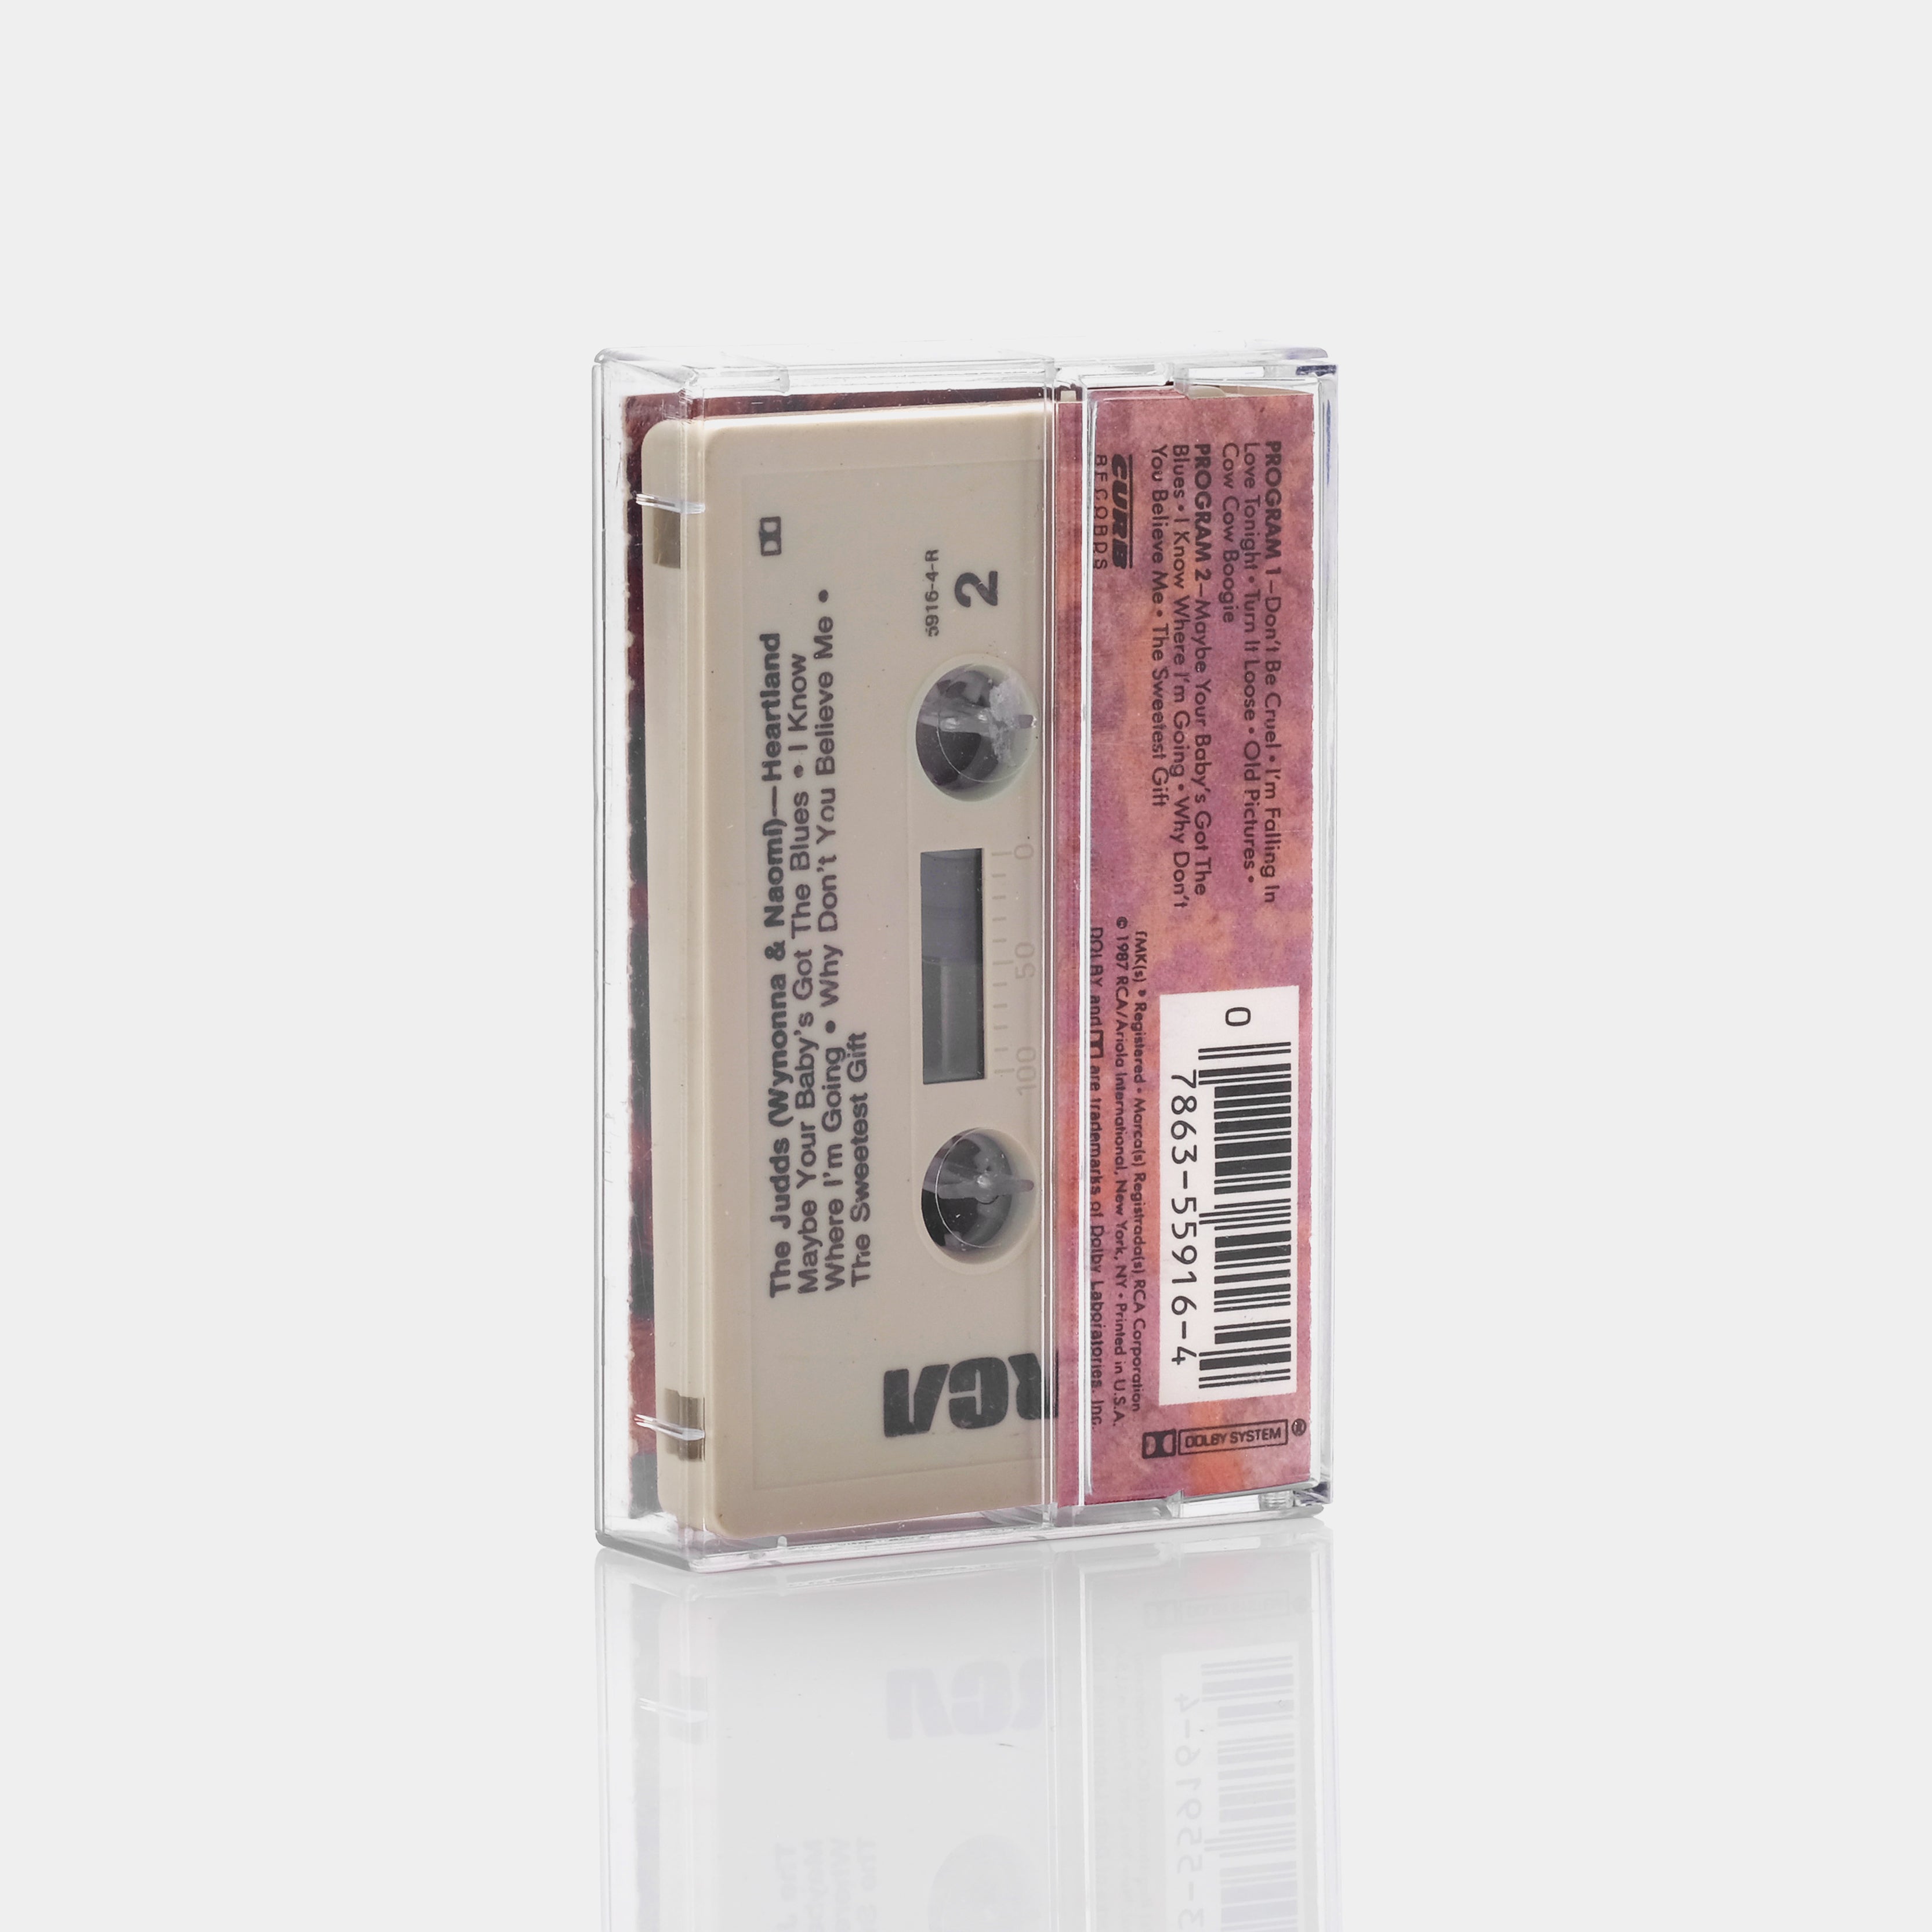 The Judds - Heartland Cassette Tape